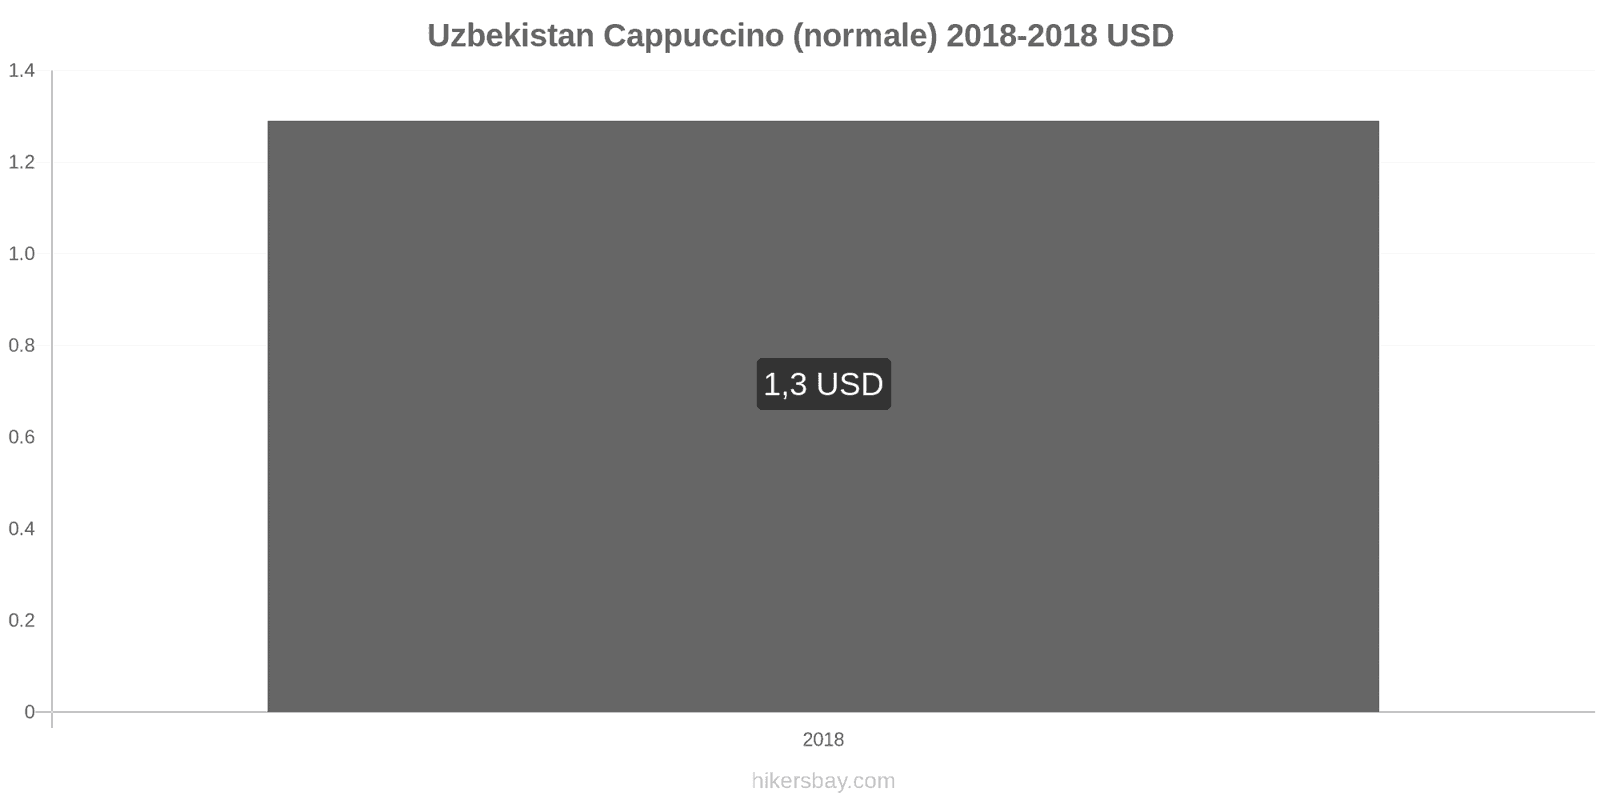 Uzbekistan cambi di prezzo Cappuccino hikersbay.com